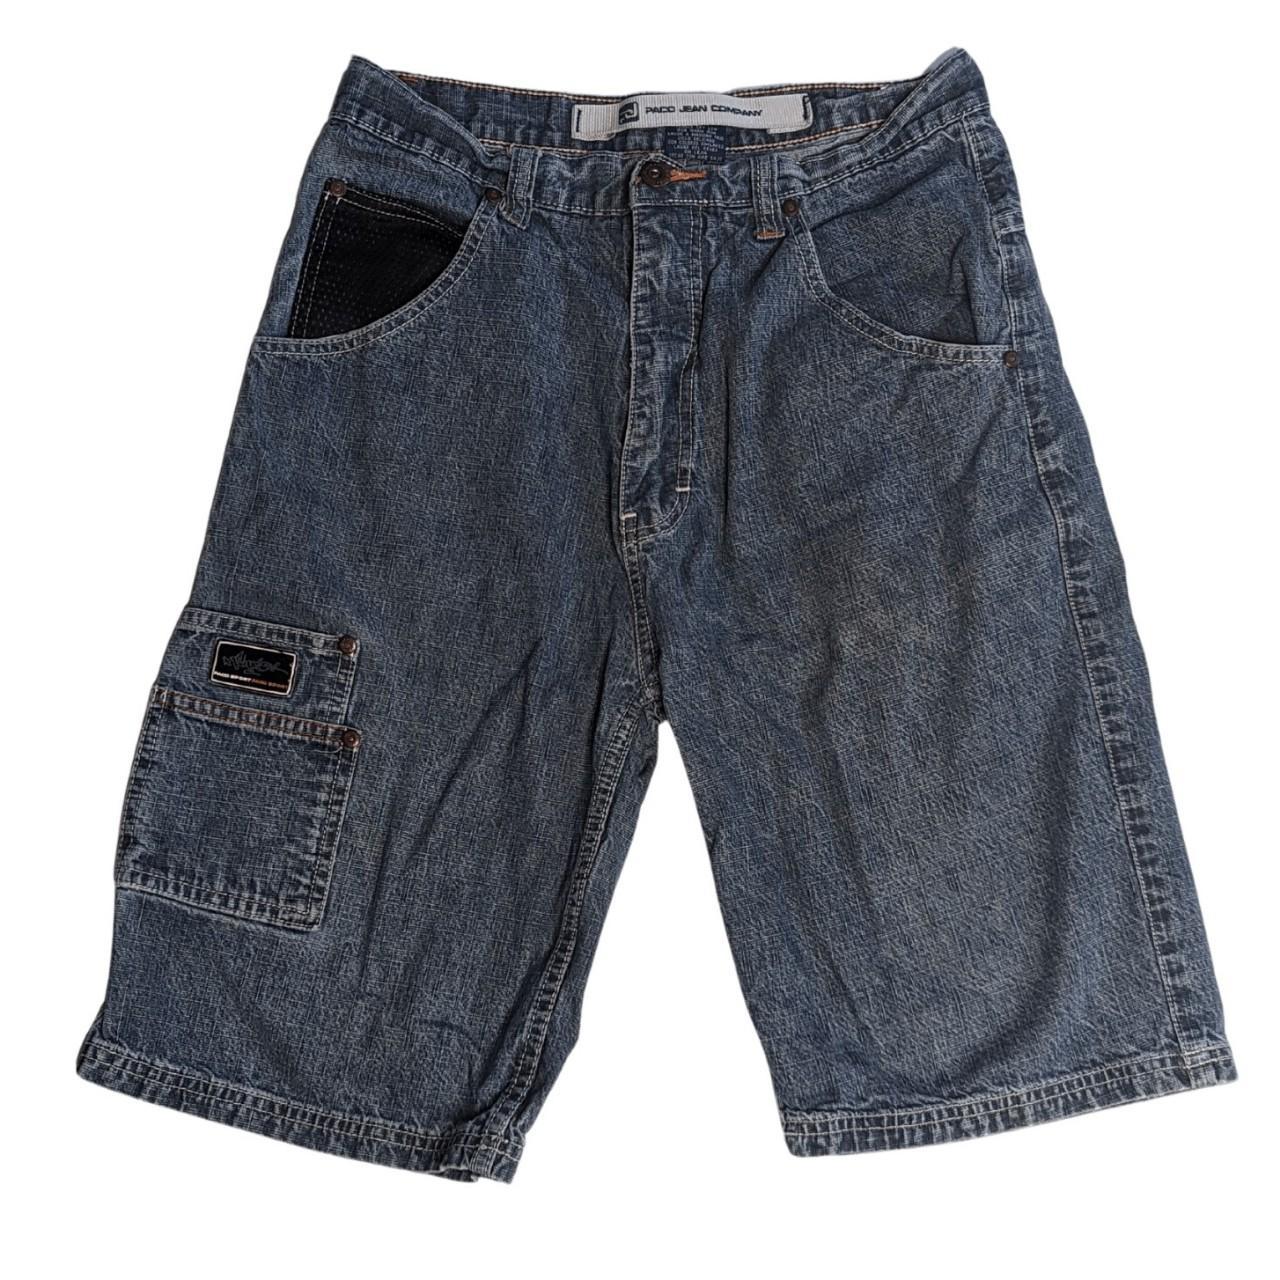 Vintage paco jeans shorts Item Details Embroidered... - Depop